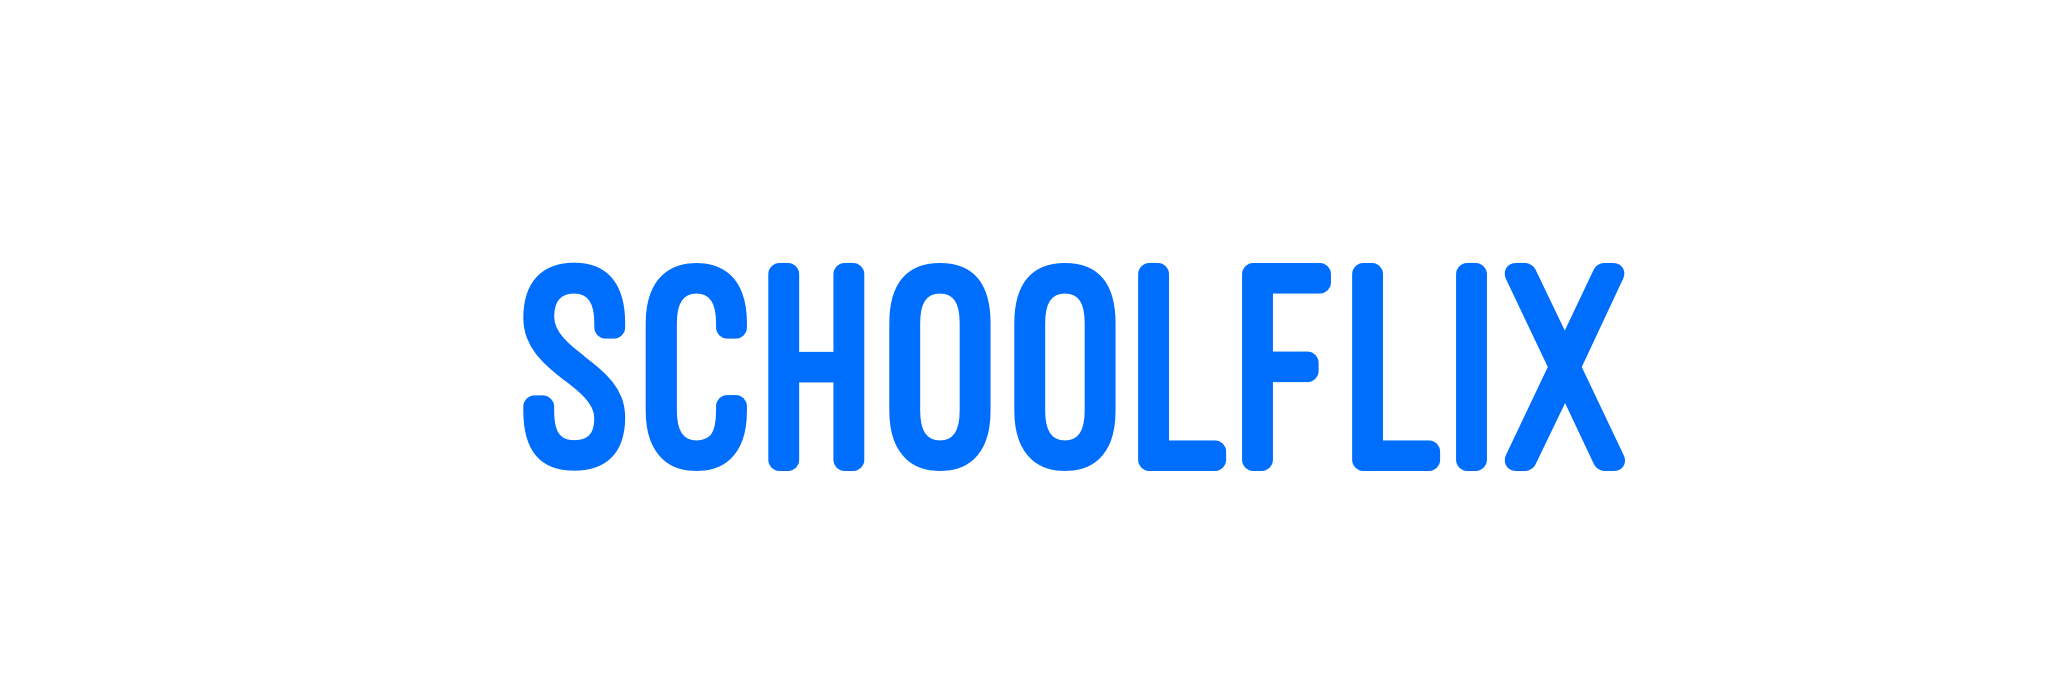 Schoolflix®